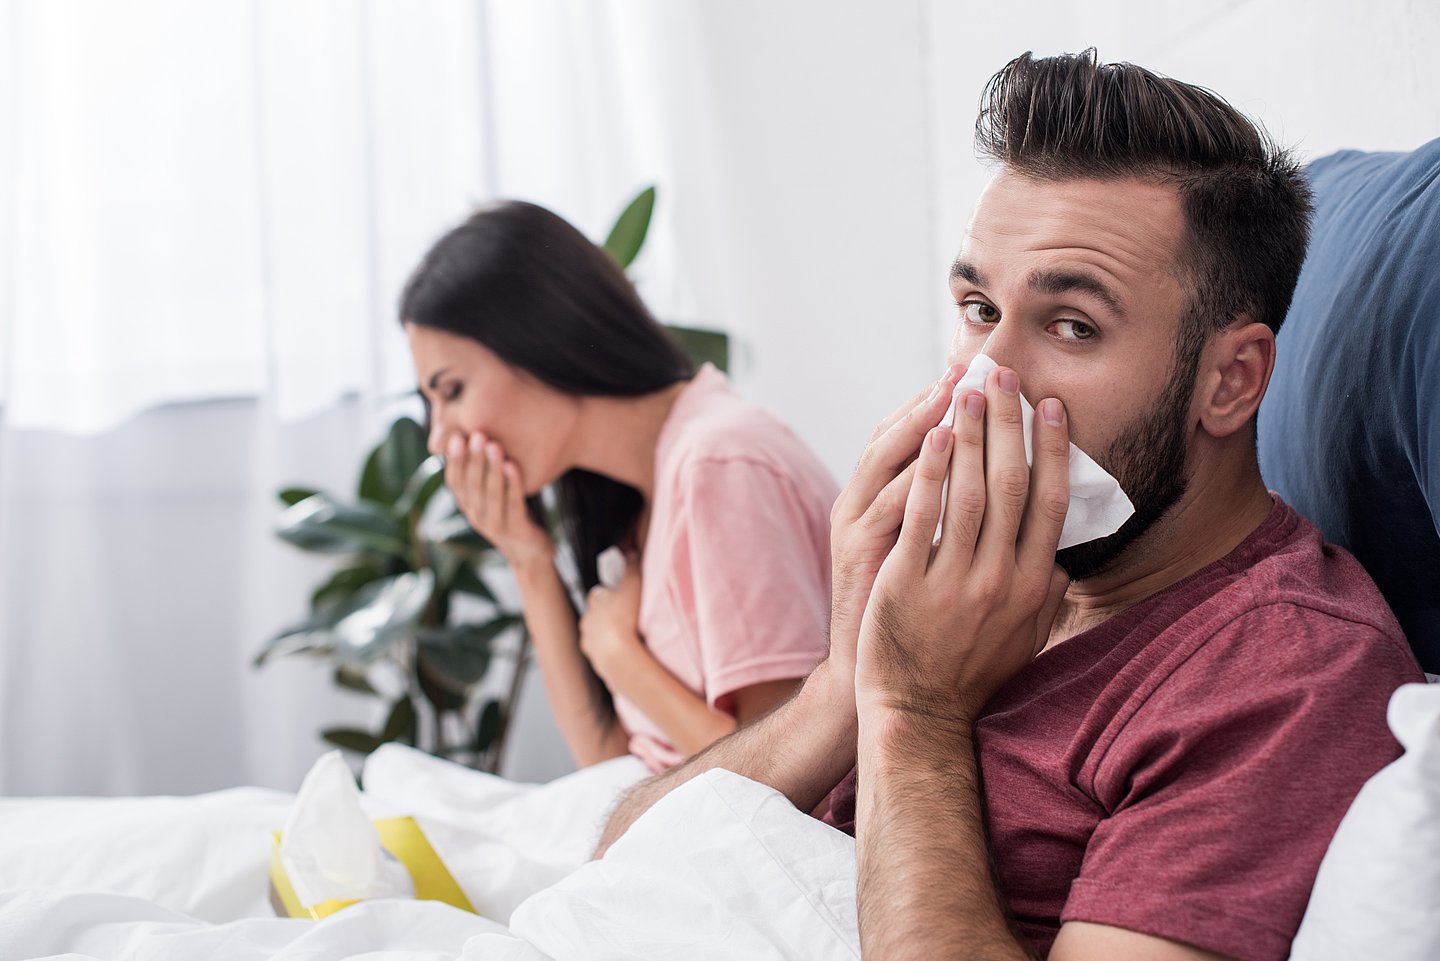 Foto zeigt eine Frau und ein Mann krank im Bett, sie hustet, er schnieft in ein Taschentuch und blickt in die Kamera.